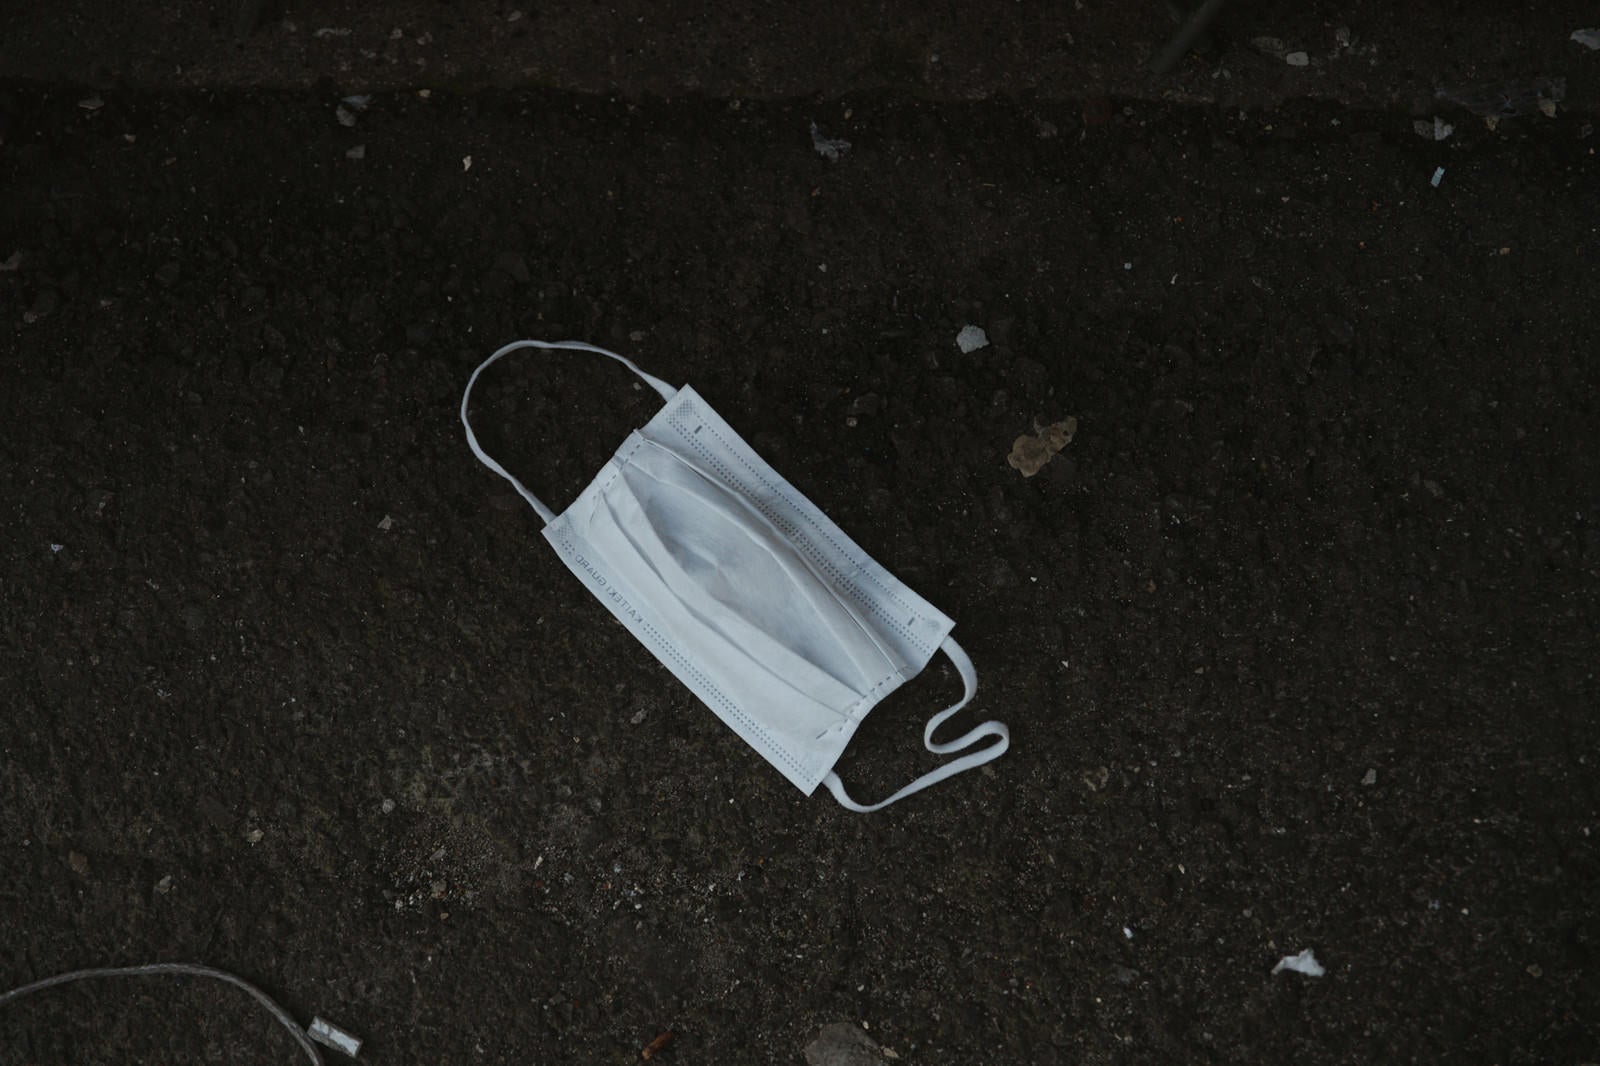 「路上に捨てられたマスク」の写真